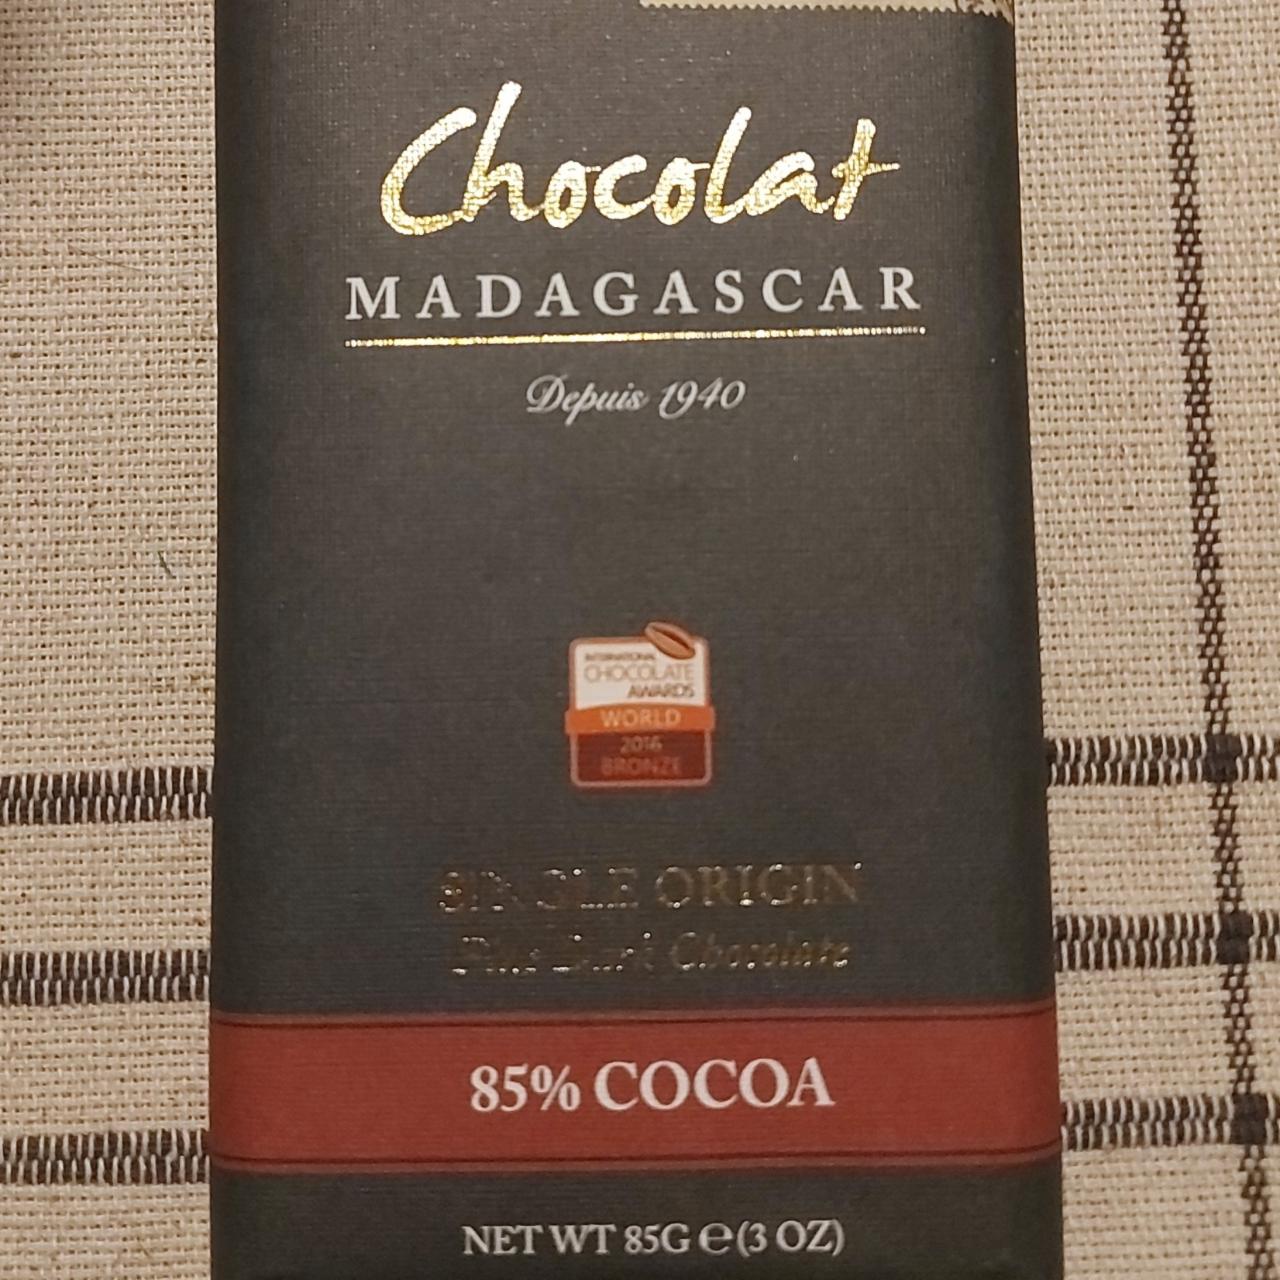 Fotografie - Chocolat 85% cocoa Madagascar